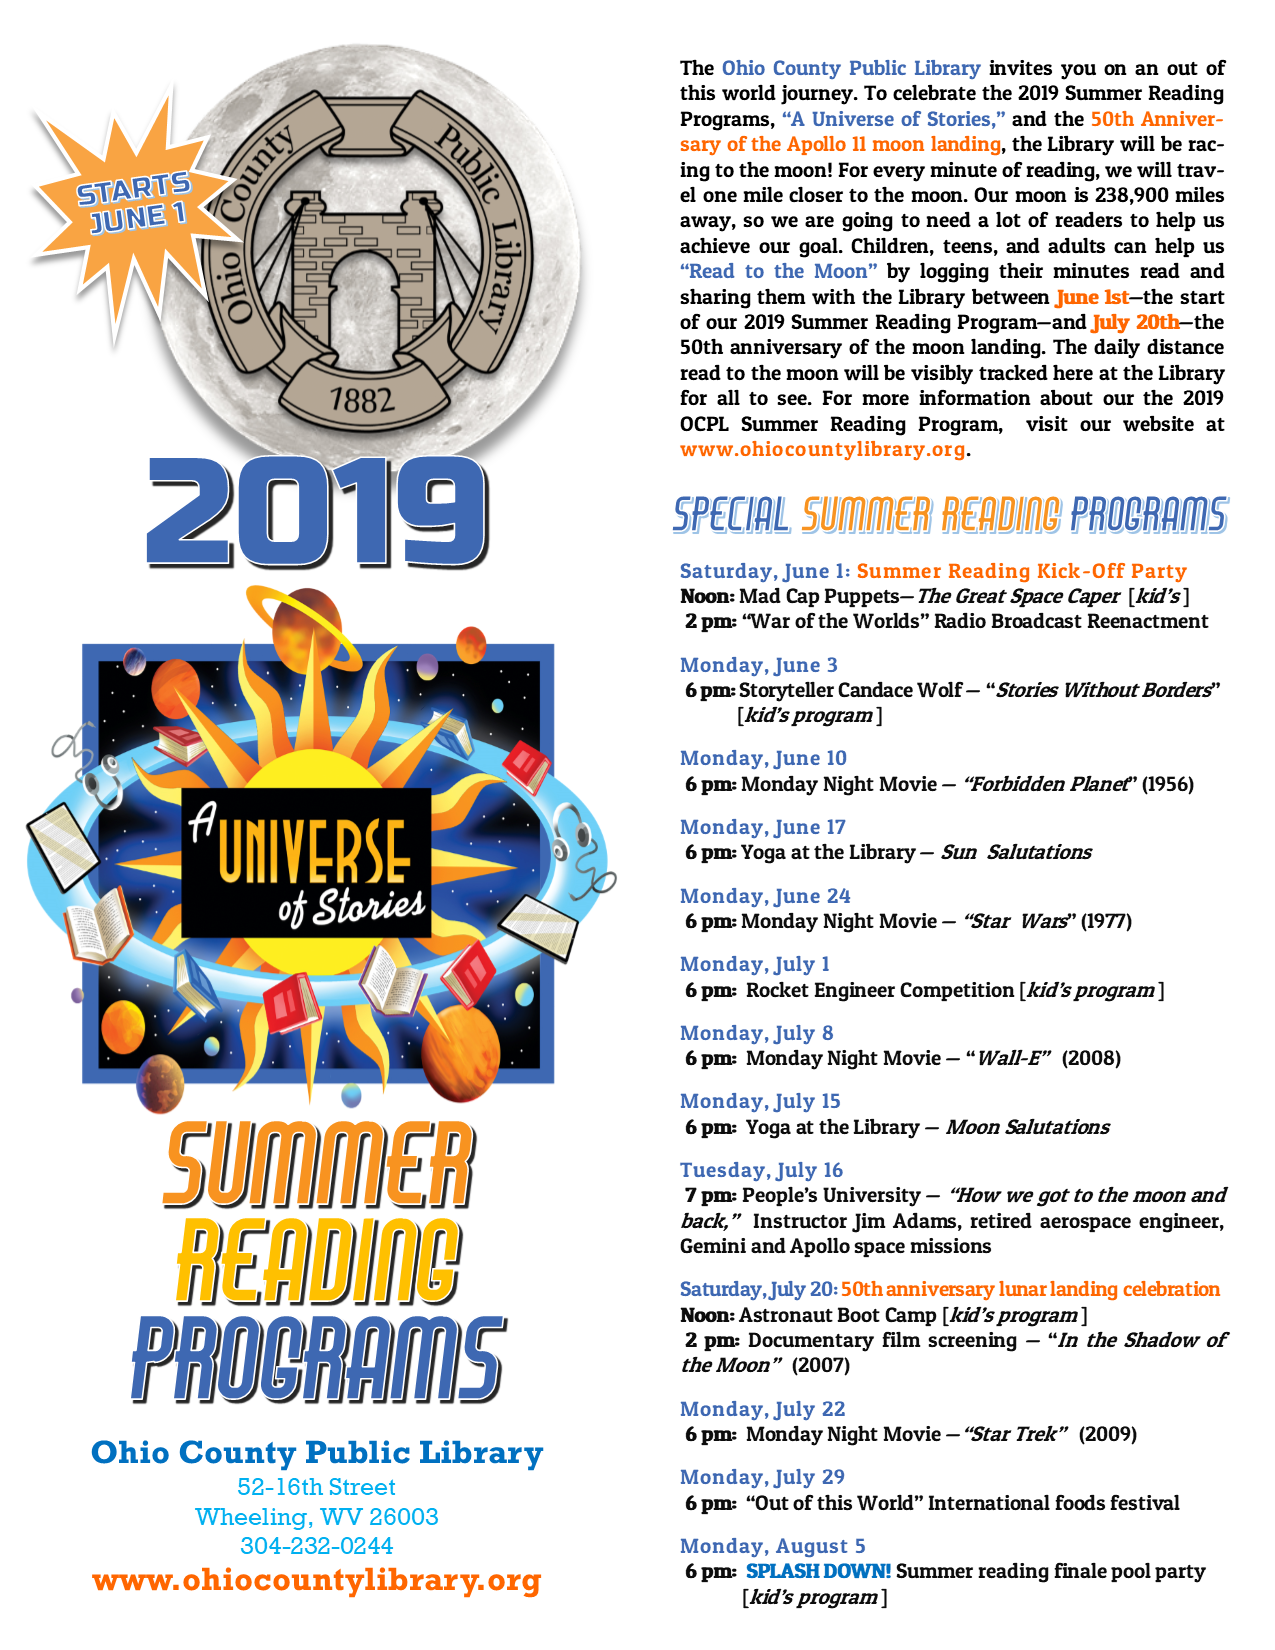 OCPL 2019 Summer Reading Program Events